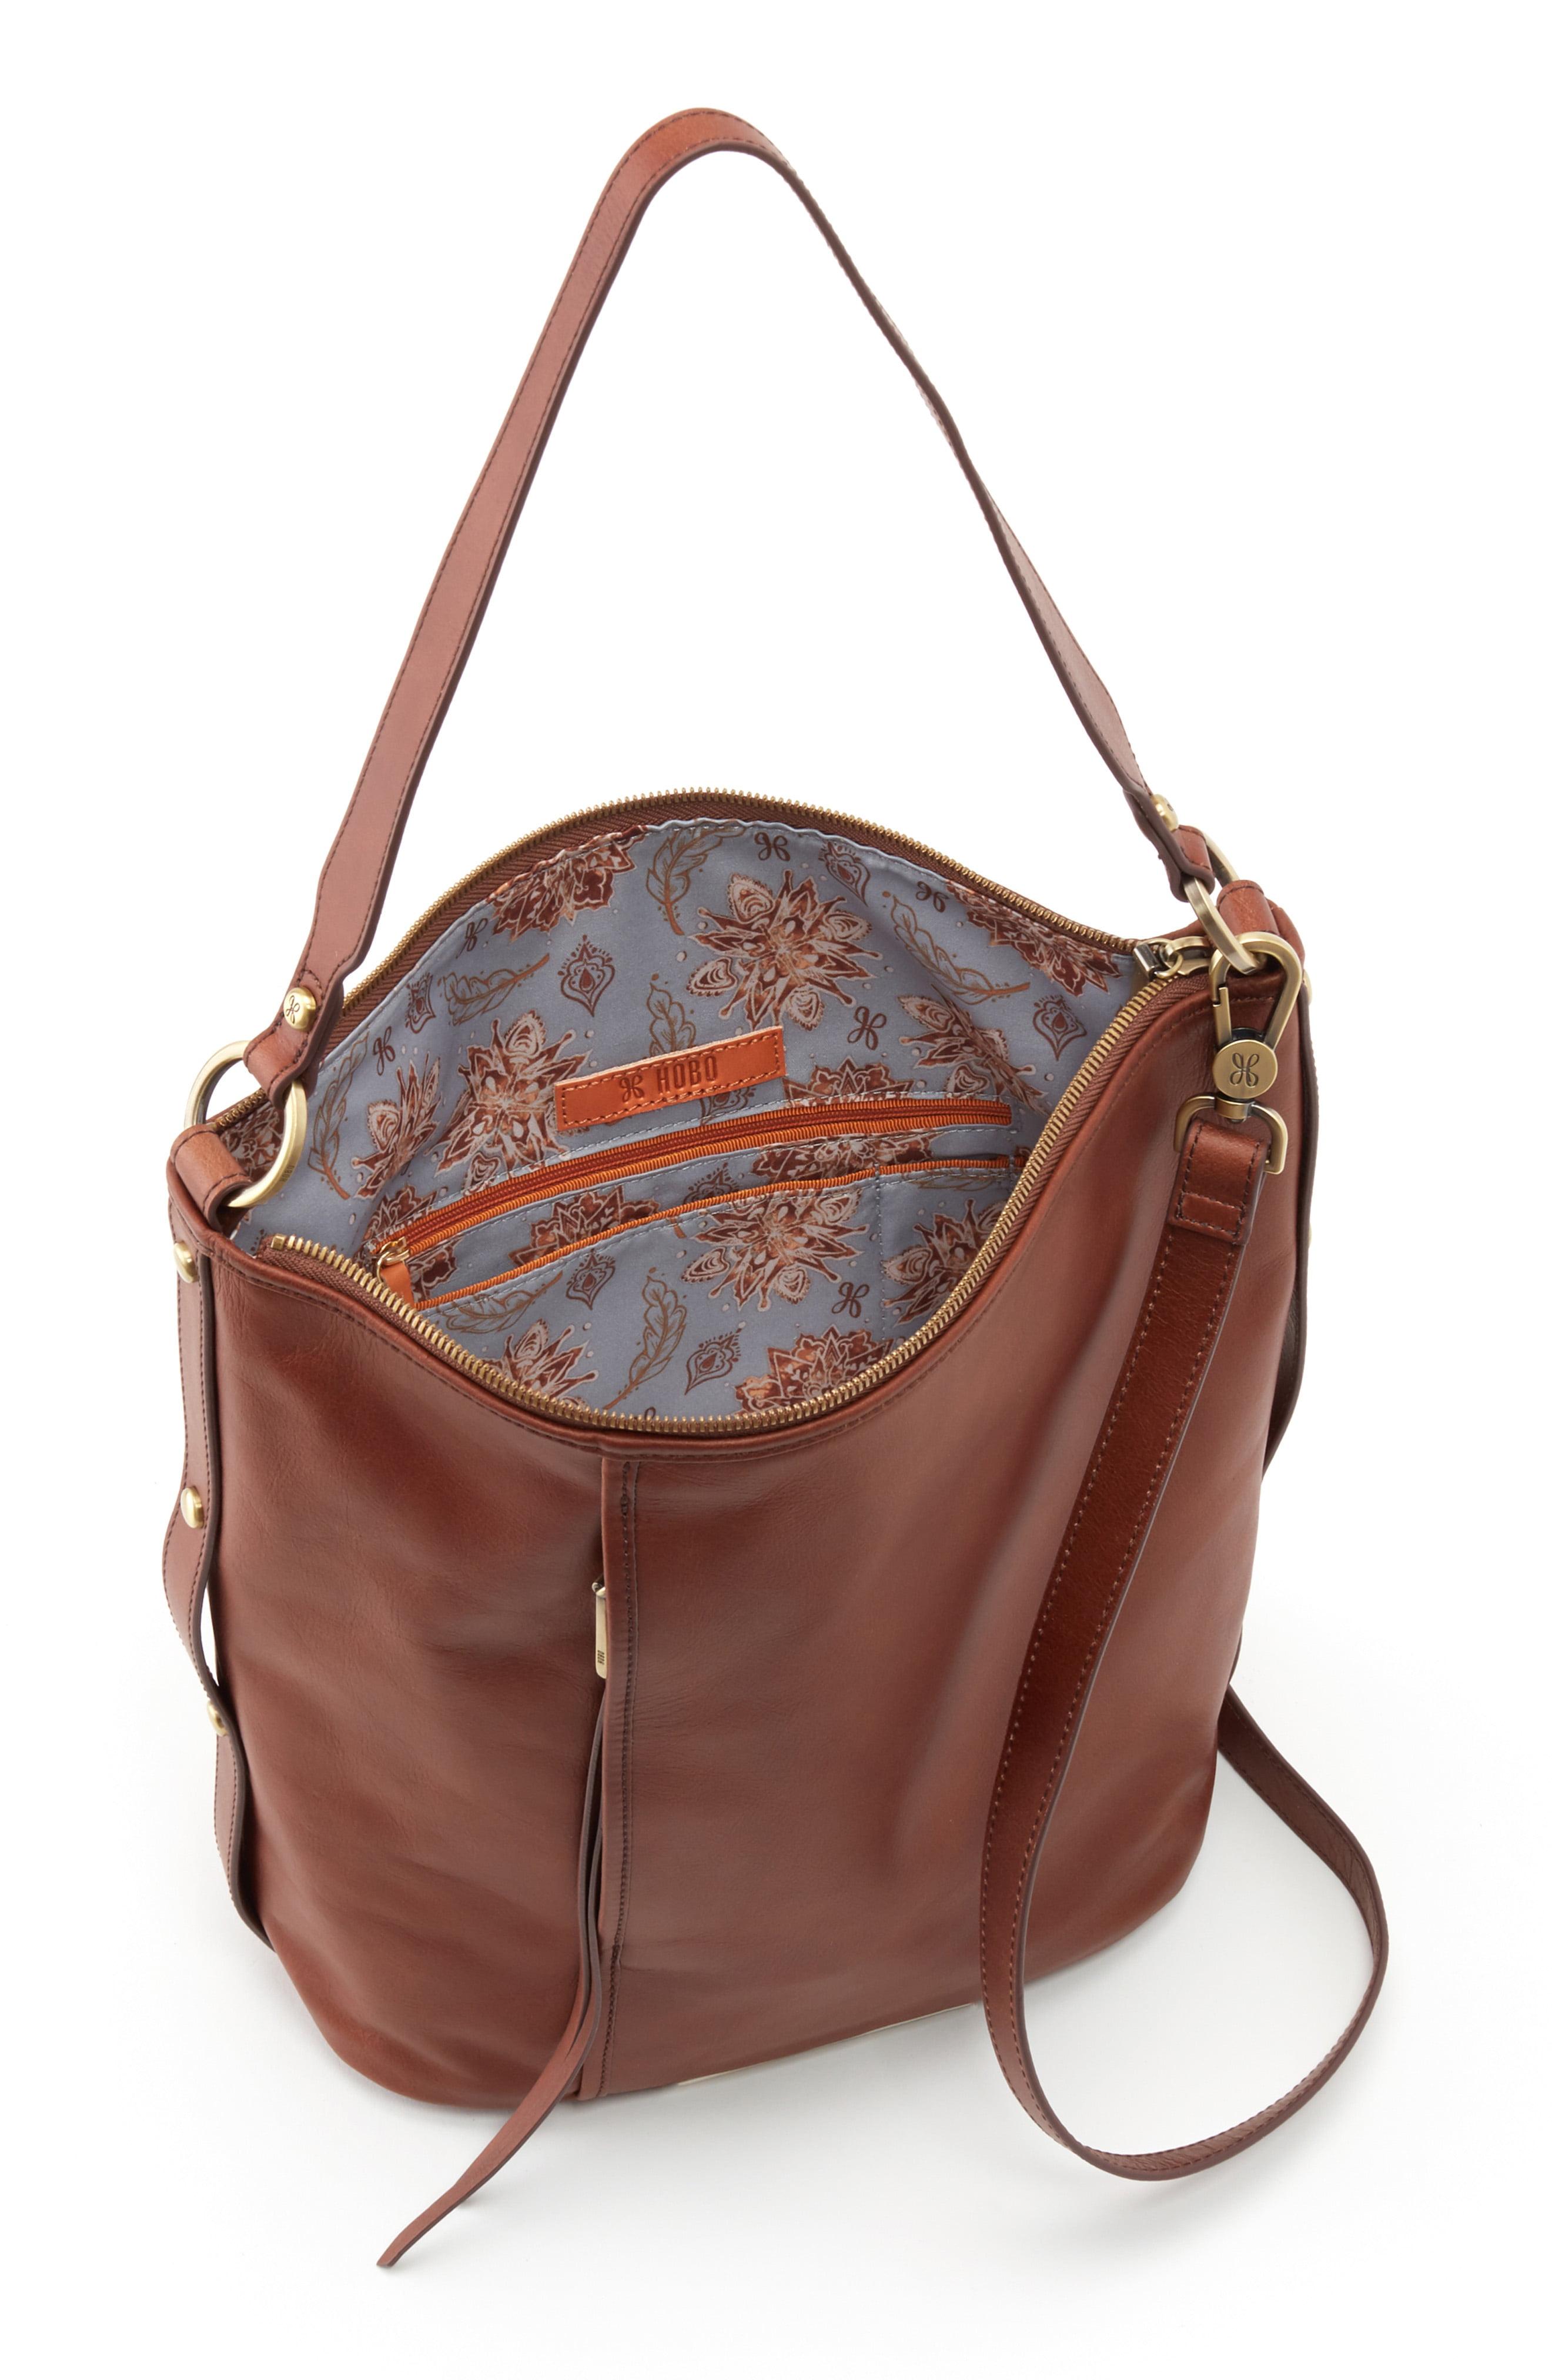 Hobo International Torin Leather Shoulder Bag in Brown - Lyst